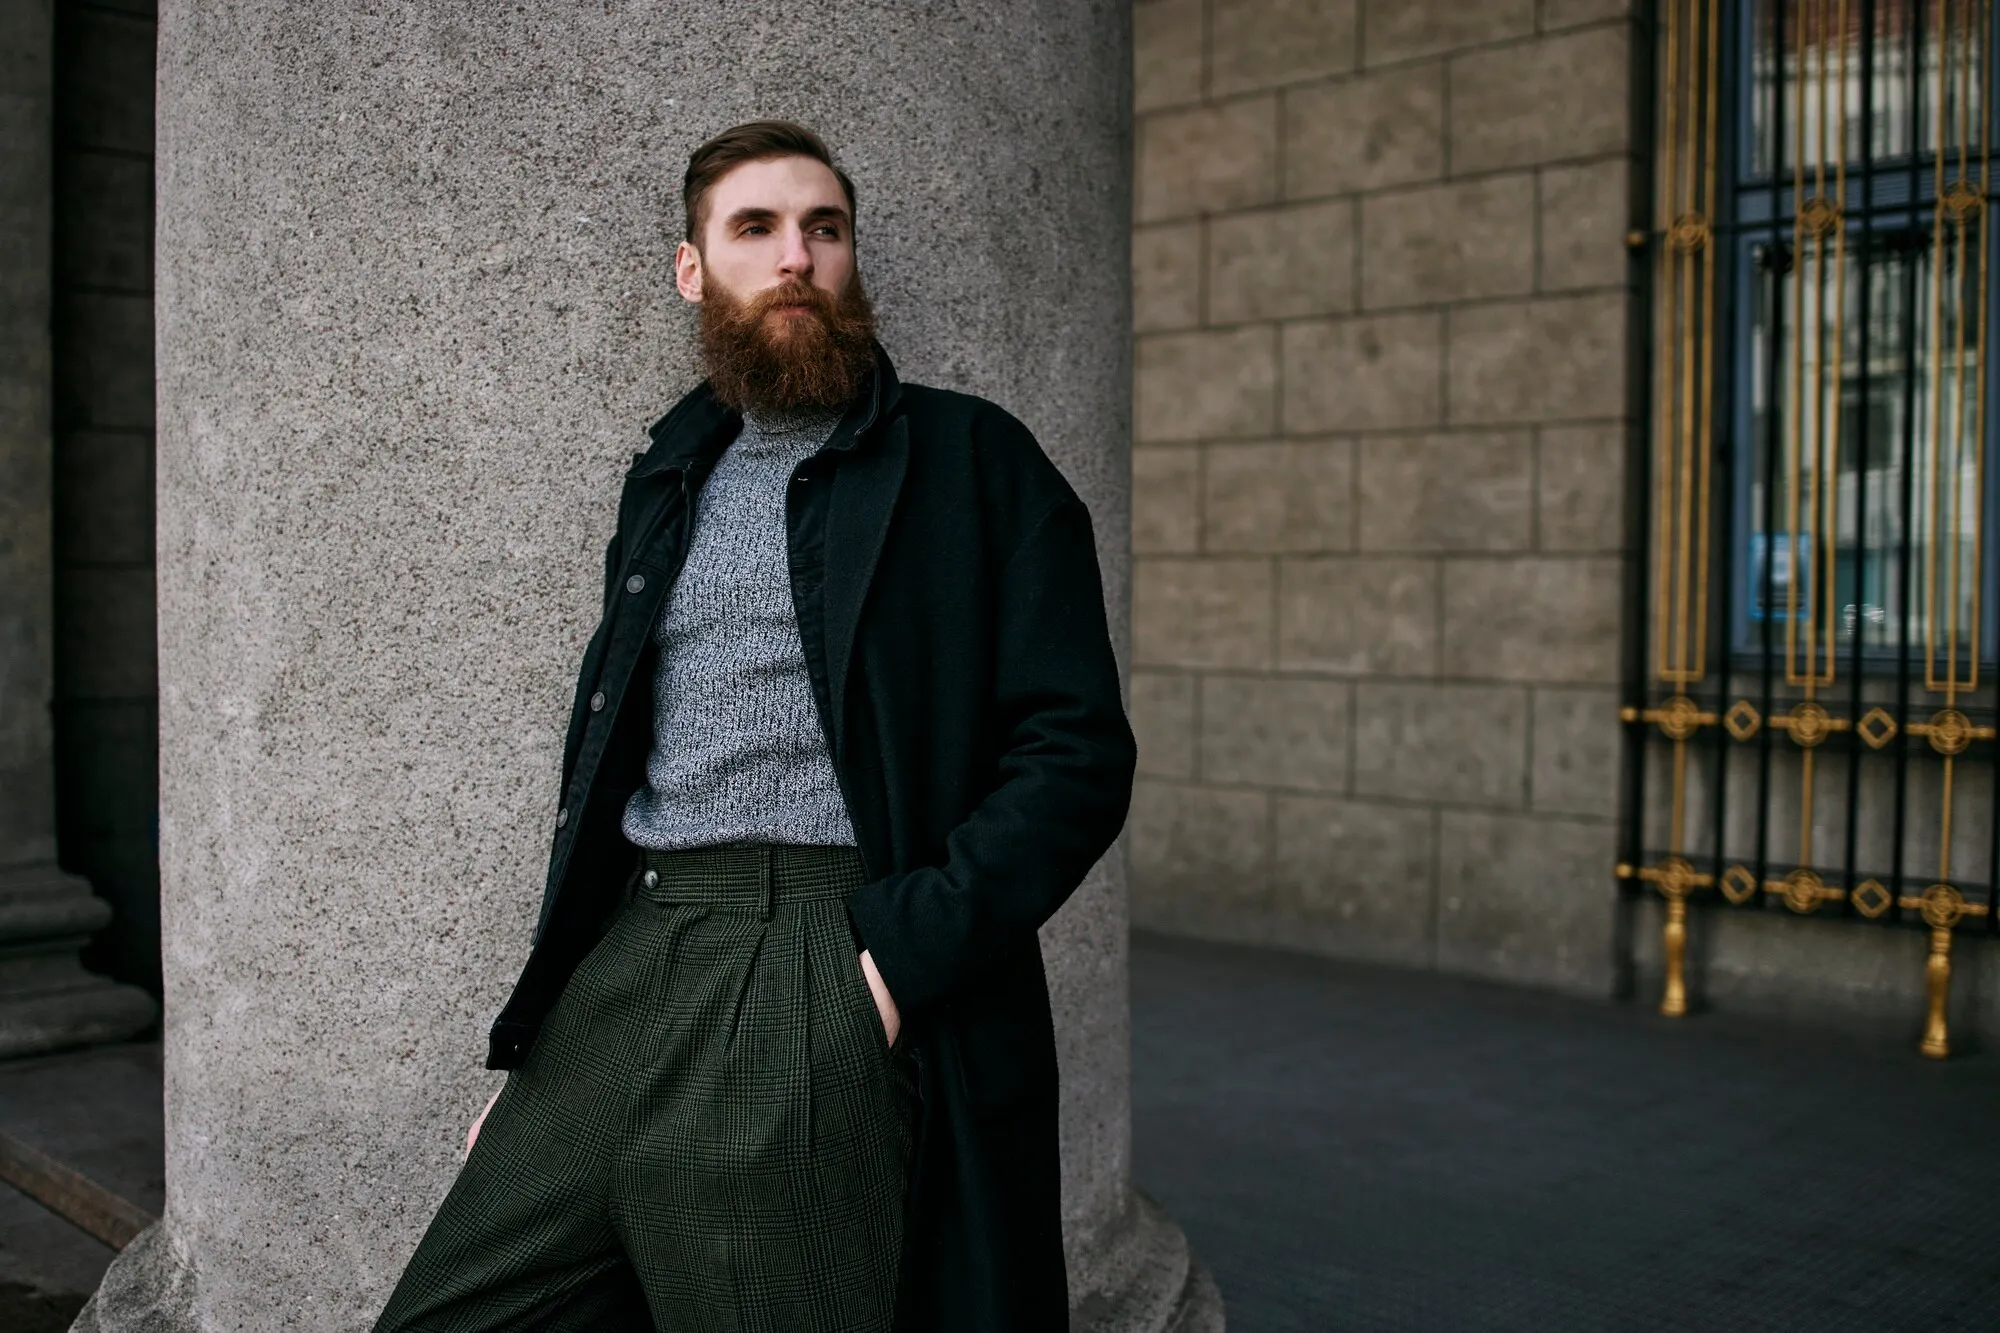  Бородатый мужчина в пальто и брюках стоит на улице